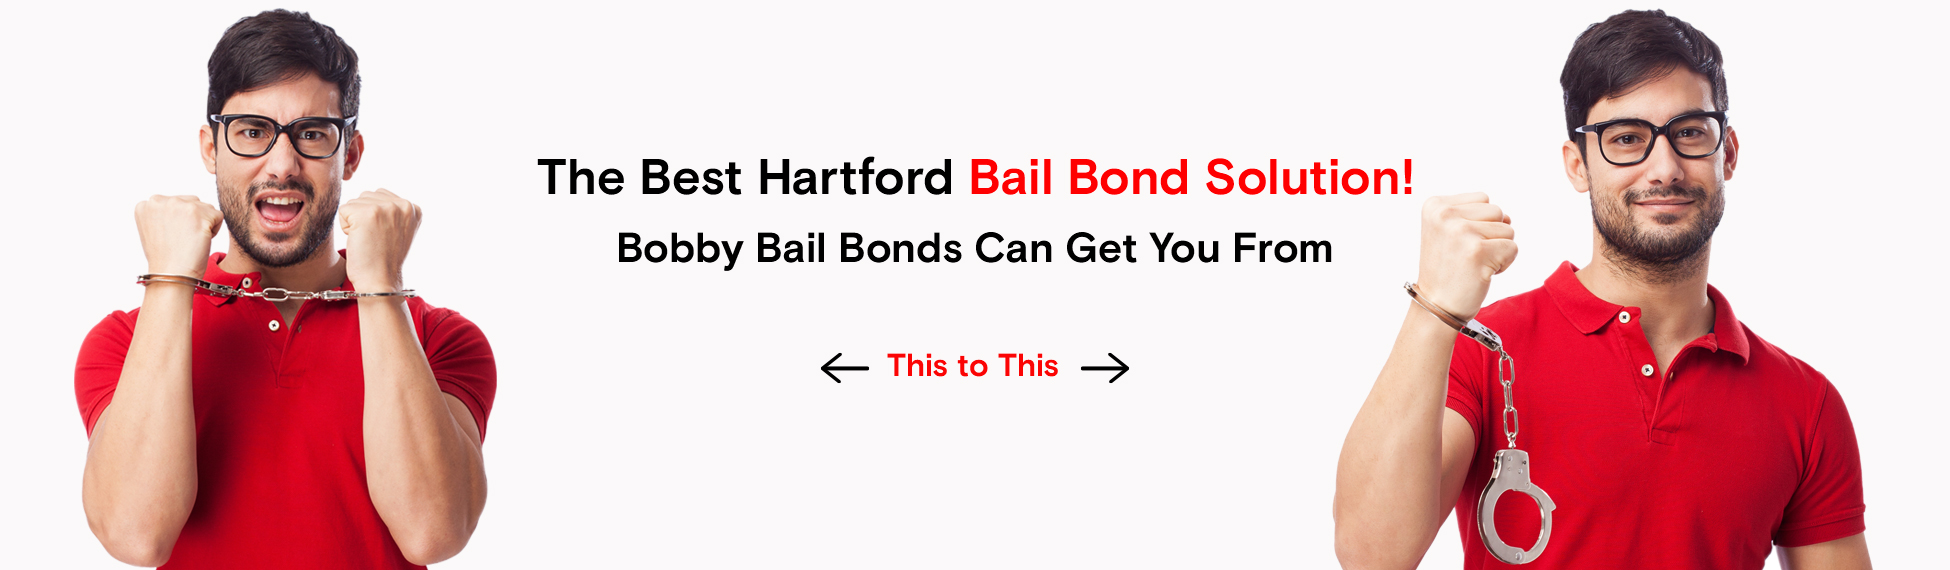 Bobby bail bonds hartford